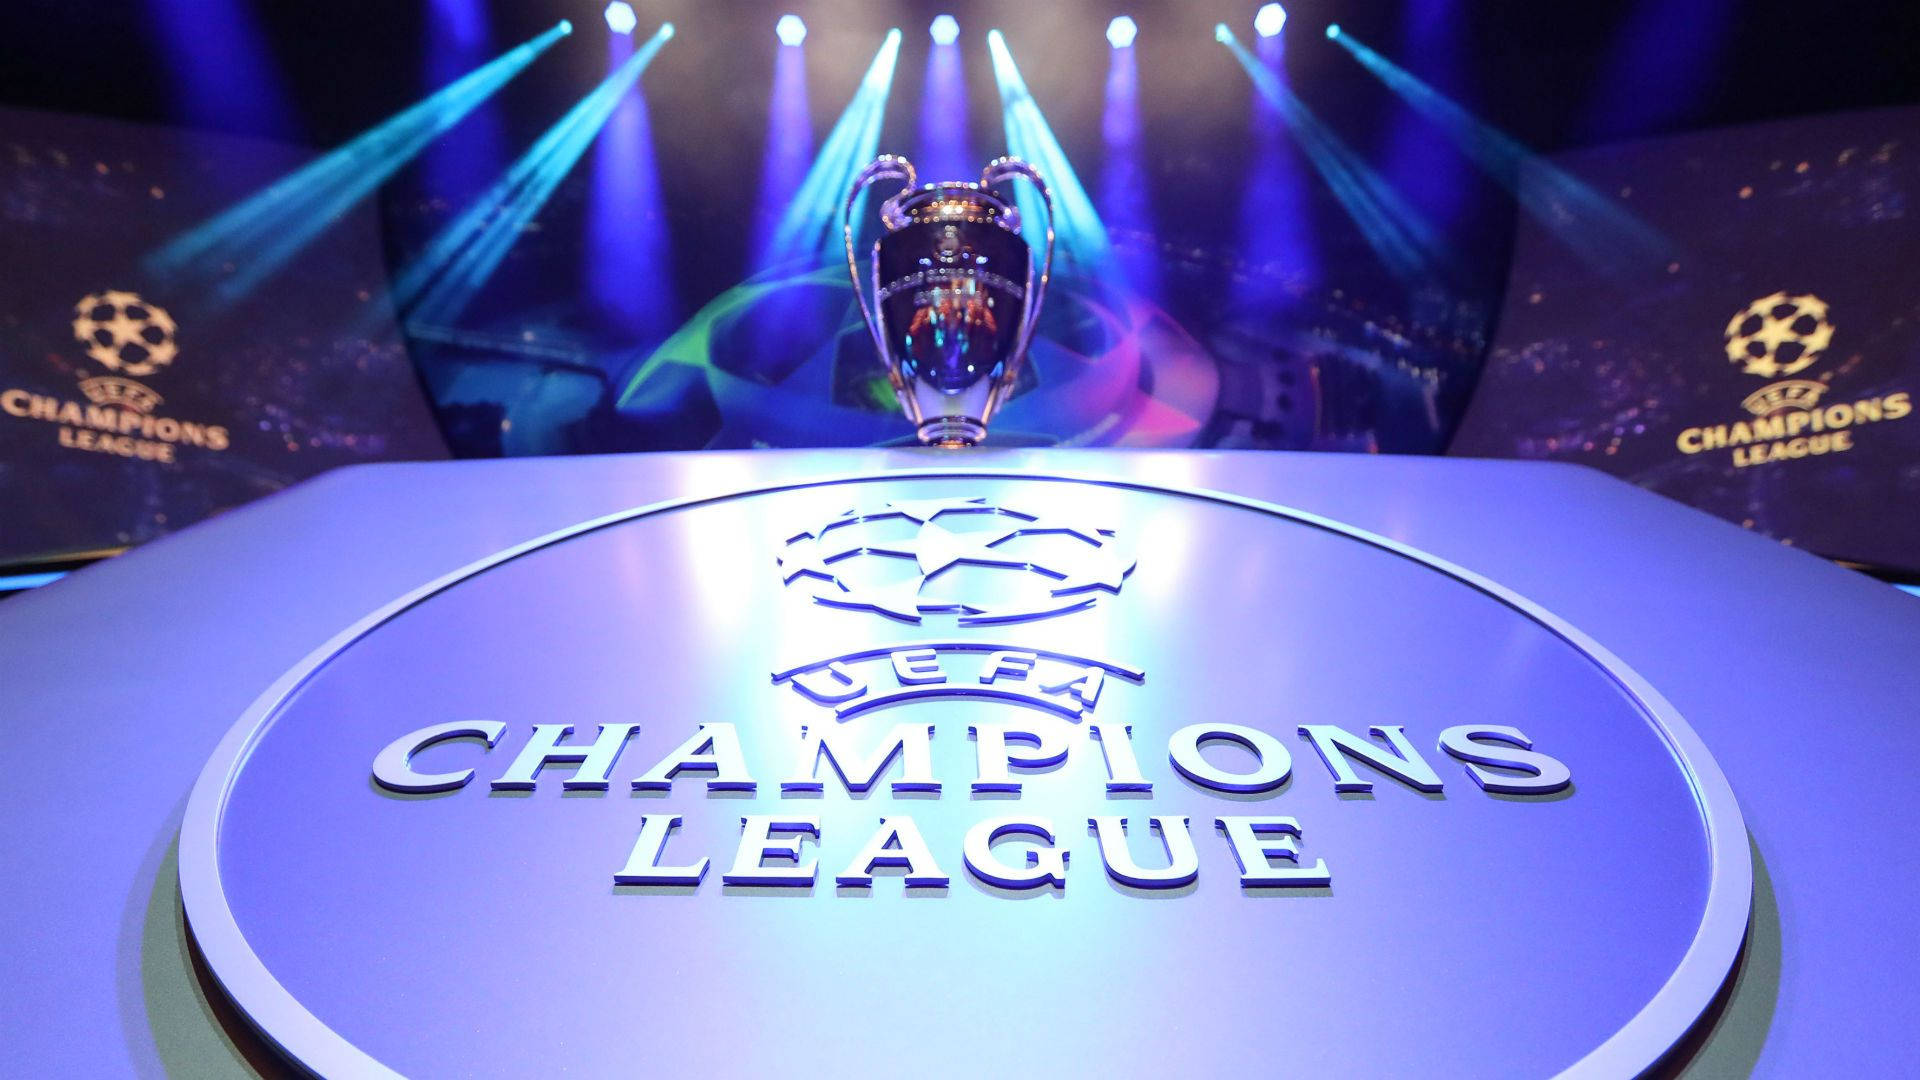 Uefa Champions League 2020 Trophy